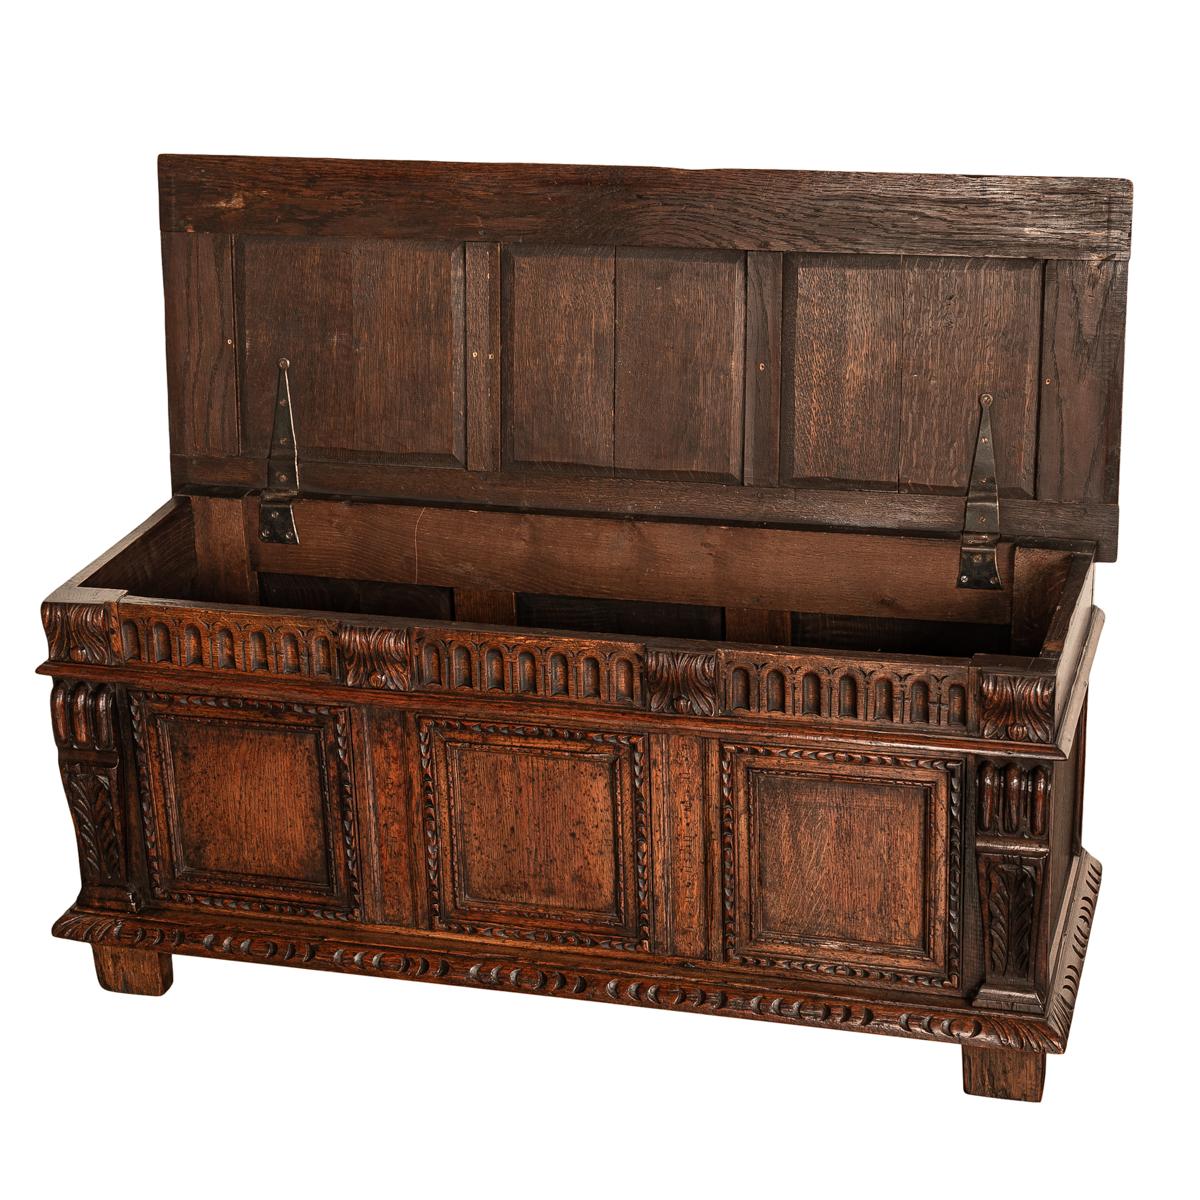 Antique Renaissance Revival Carved Oak Coffer Chest Trunk Window Bench Seat 1880 3